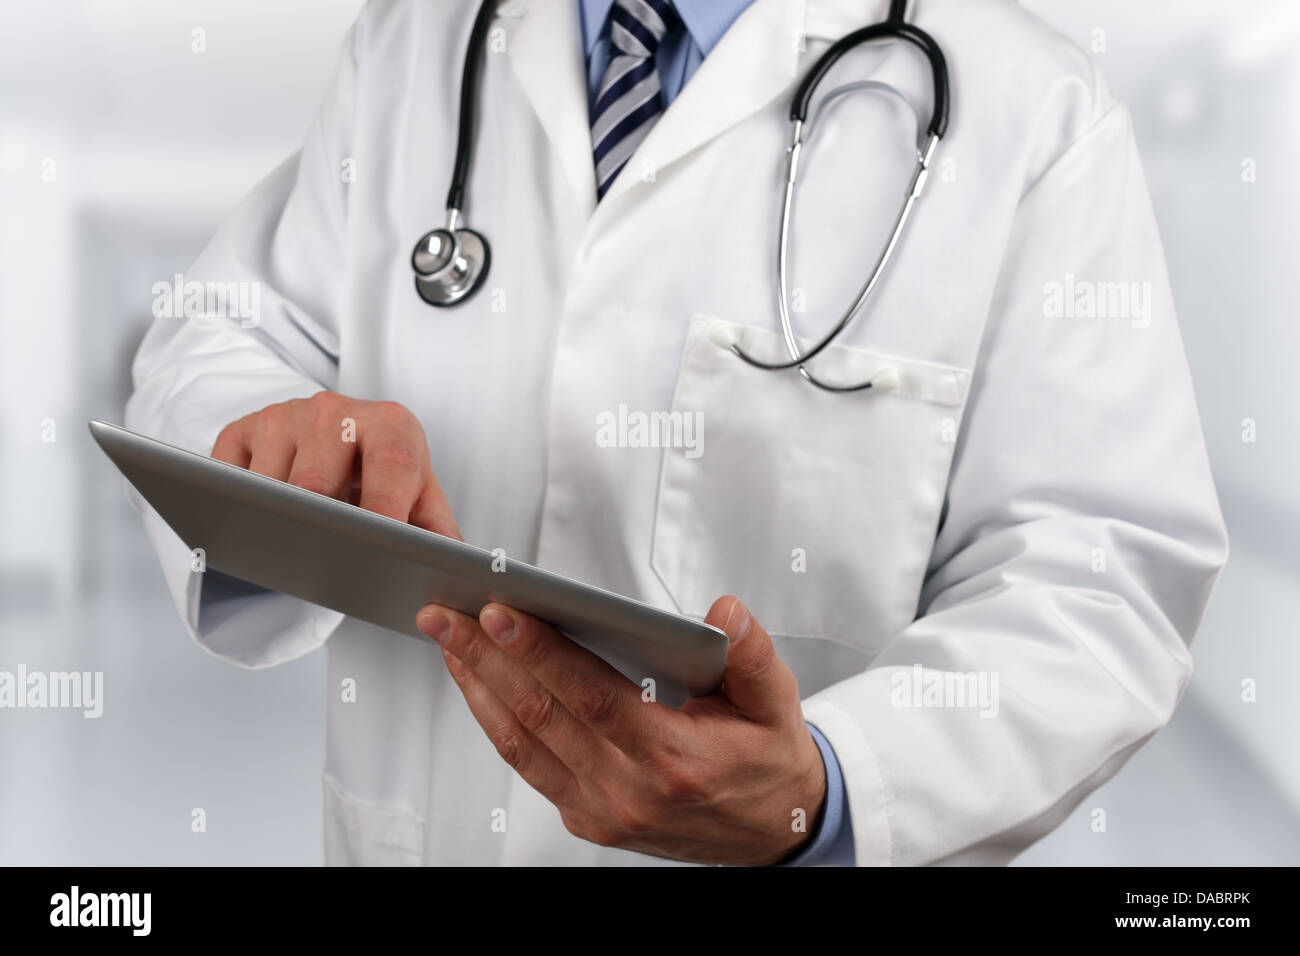 Doctor using digital tablet Banque D'Images